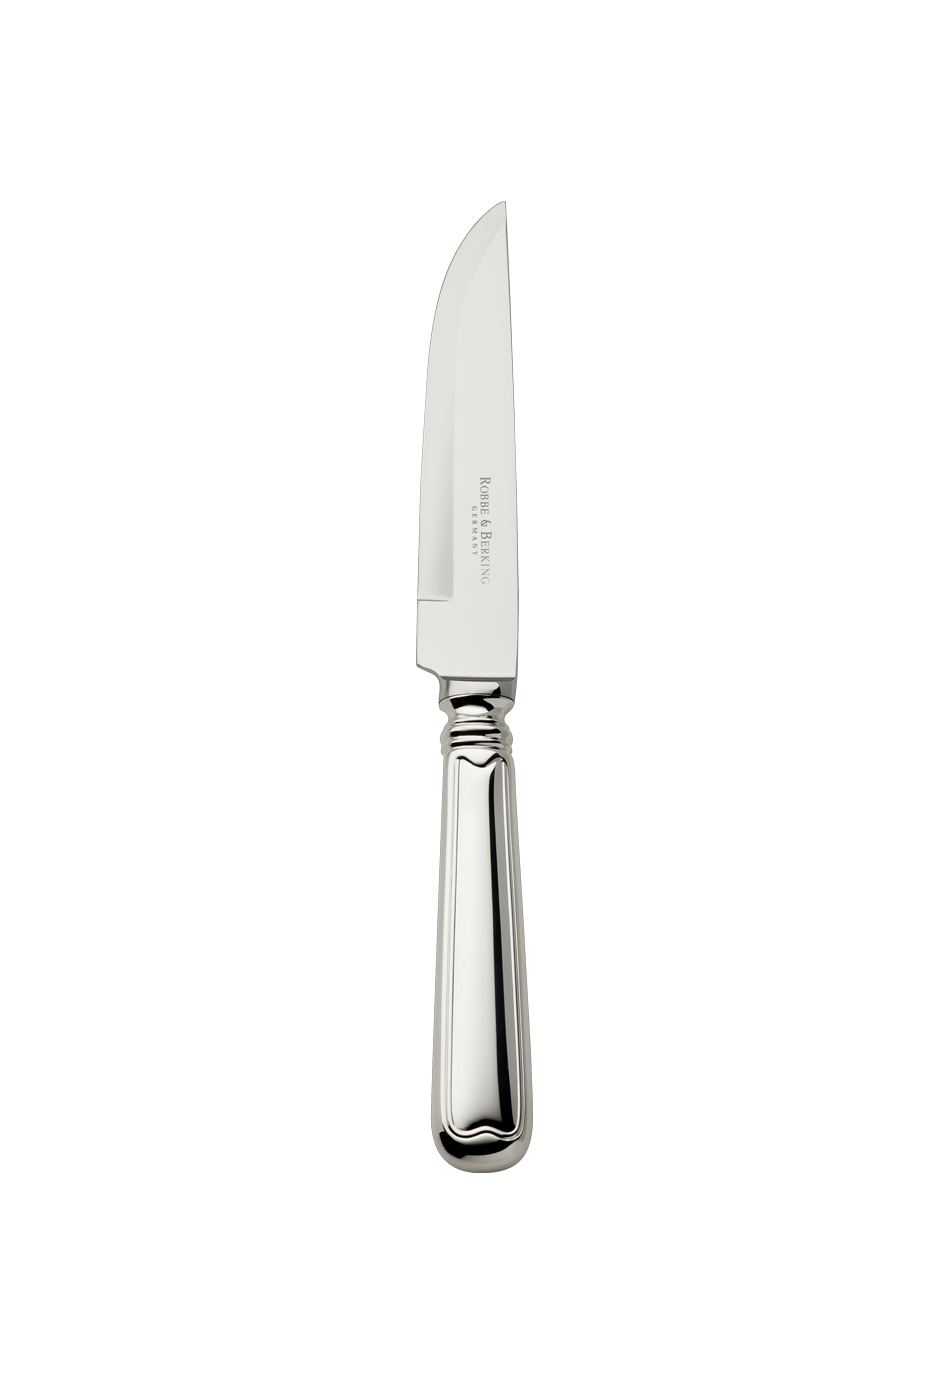 Robbe Berking Alt-Faden 925 Sterling Steak Knife